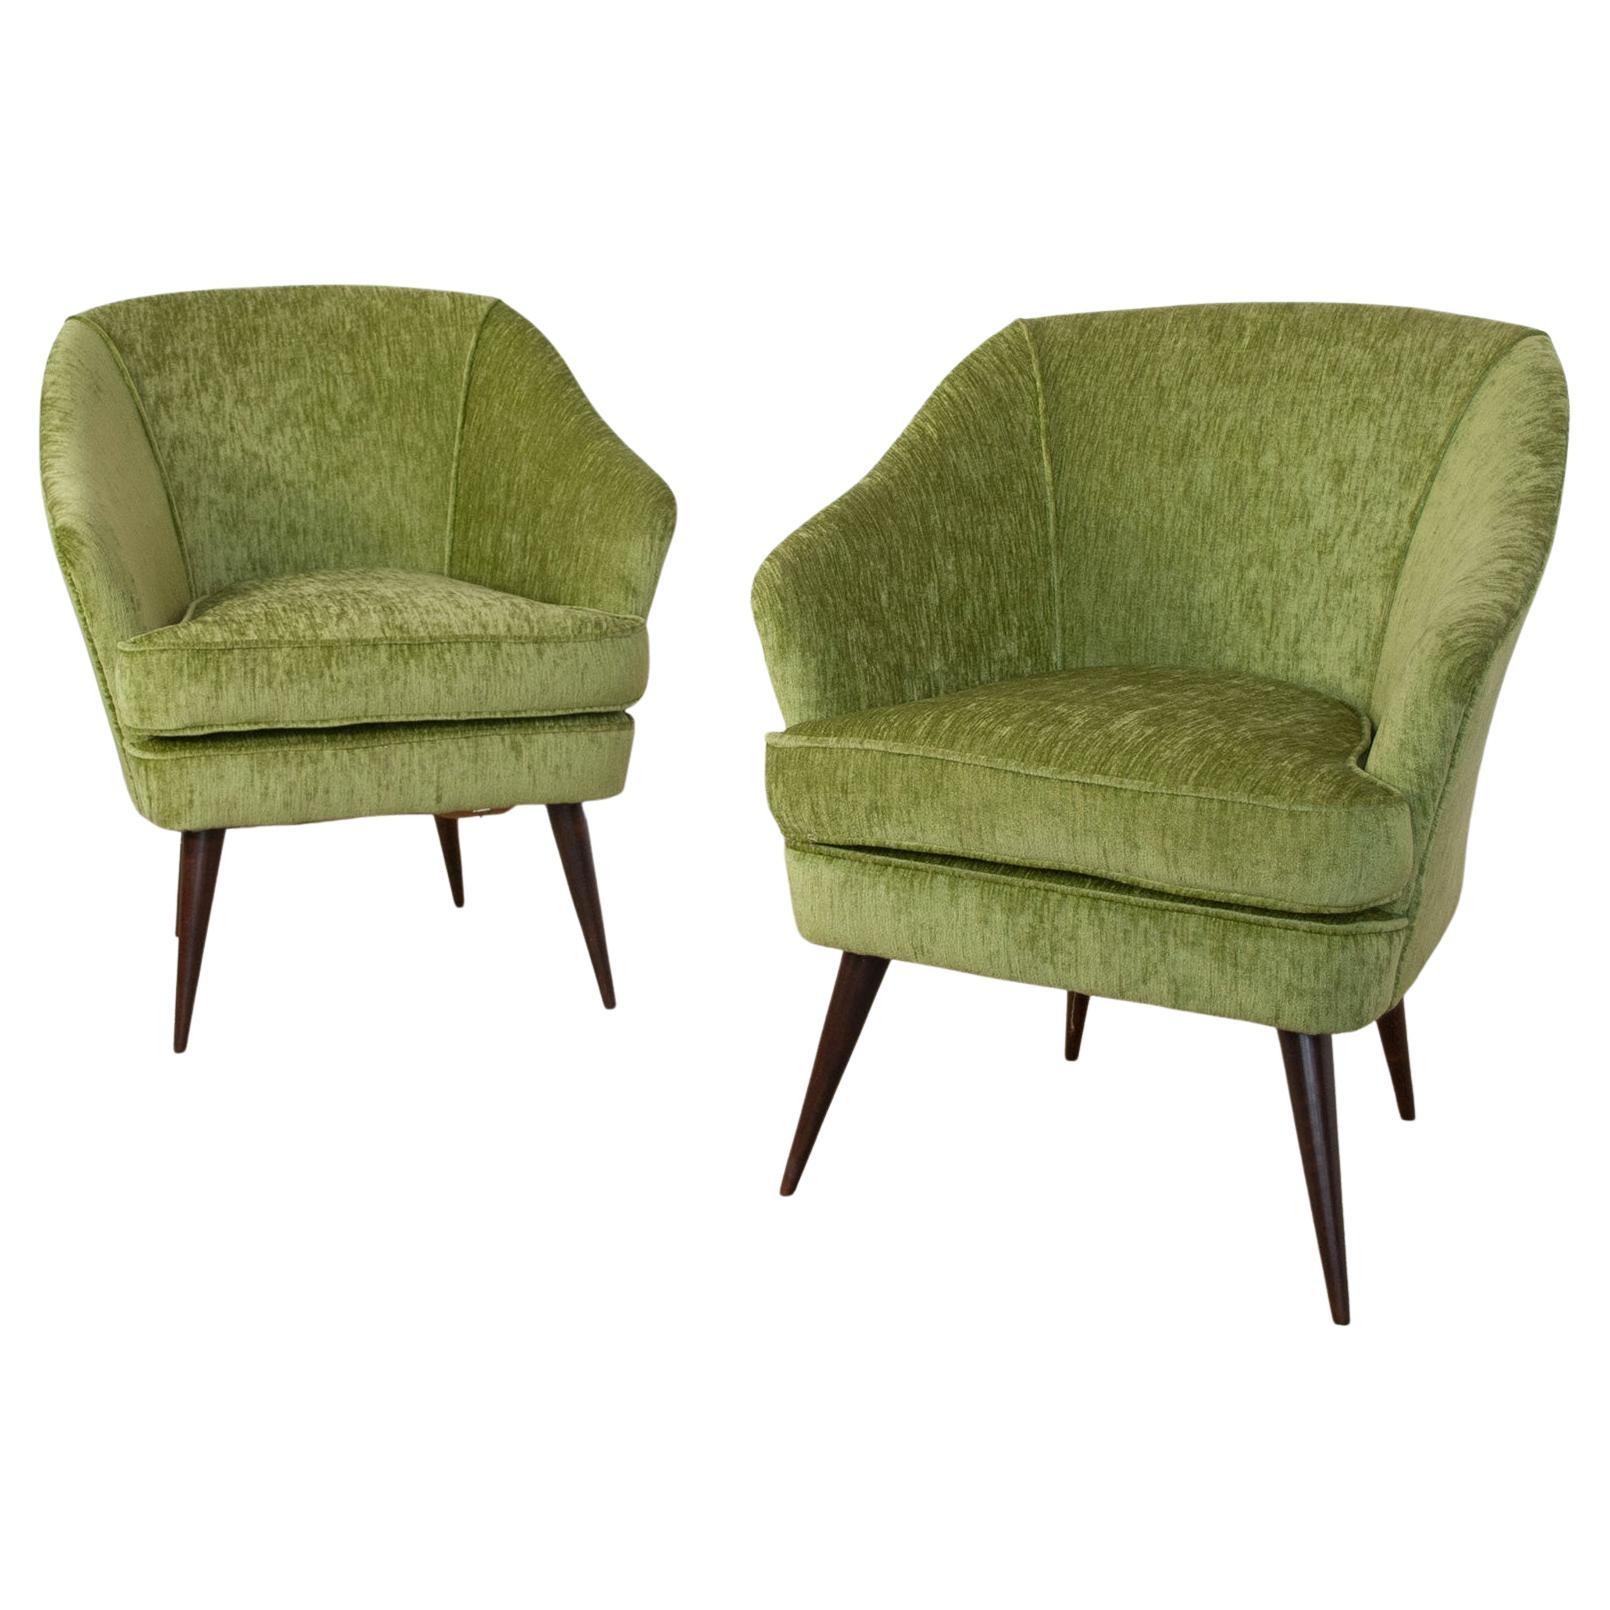 Ensemble de deux fauteuils fabriqués par le designer Casa e Giardino, Gio Ponti, 1940.